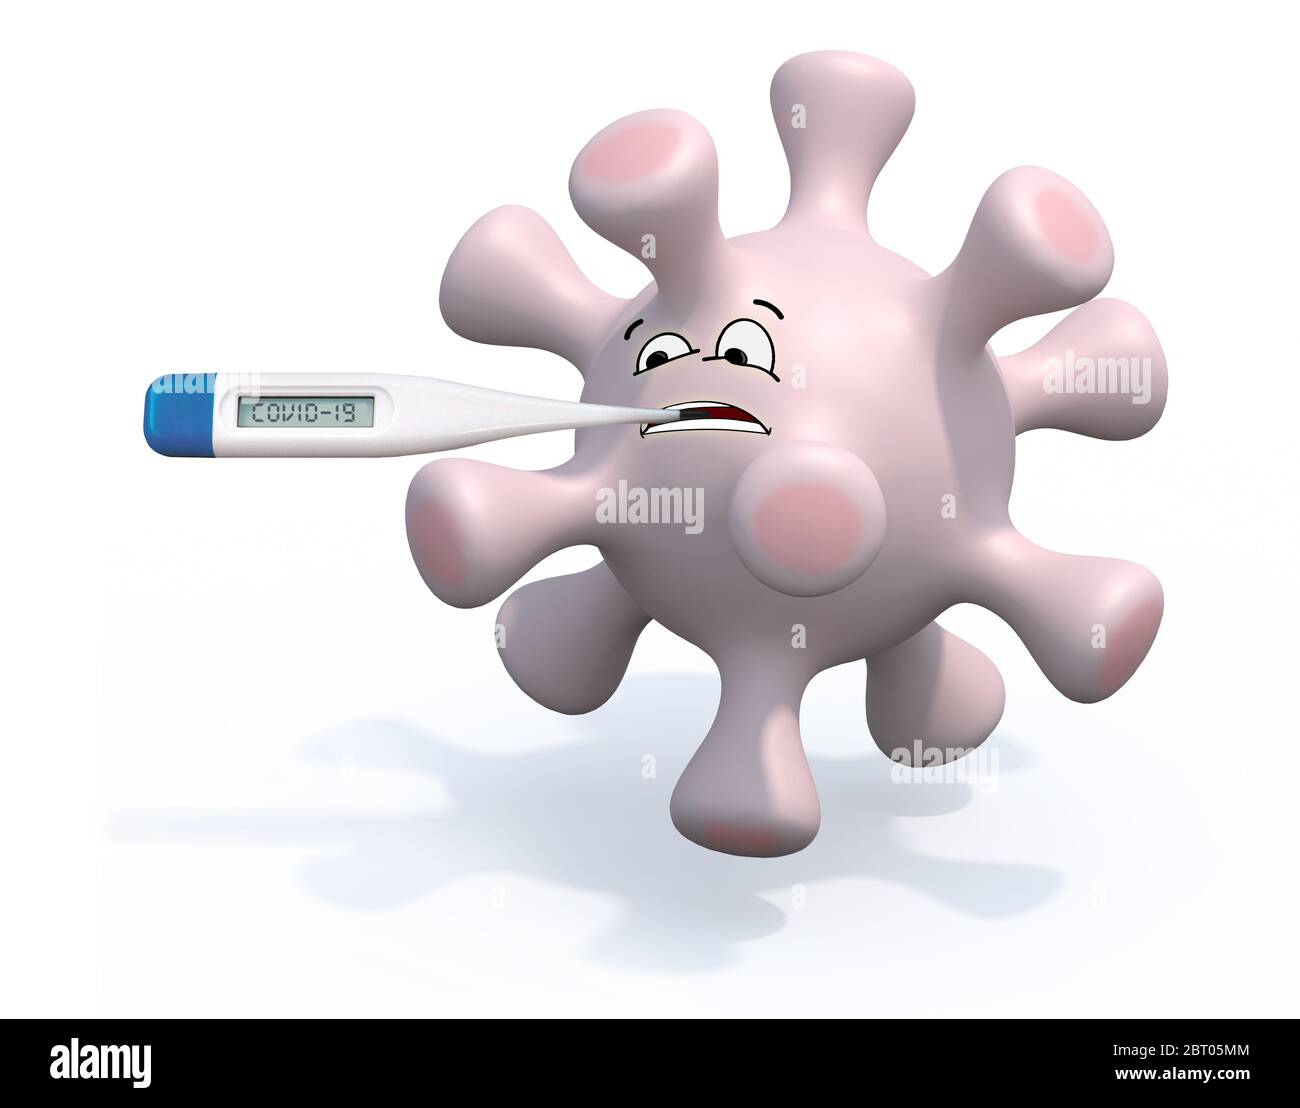 cartone animato con viso e termometro sulla bocca, illustrazione 3d Foto Stock